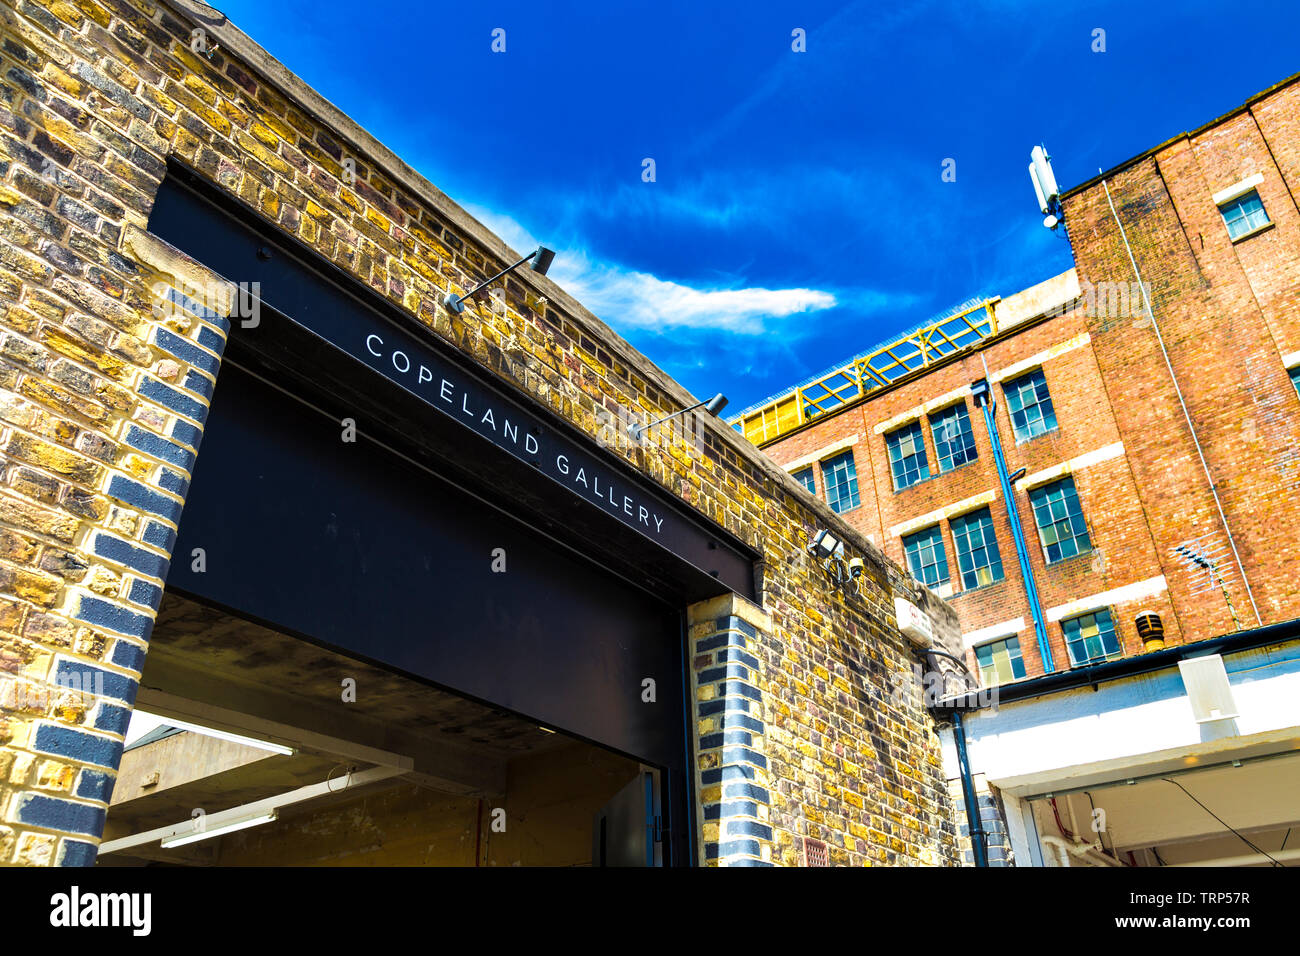 Copeland Galerie mit der bussey Gebäude im Hintergrund, Copeland Park in Peckham Rye, London, UK Stockfoto